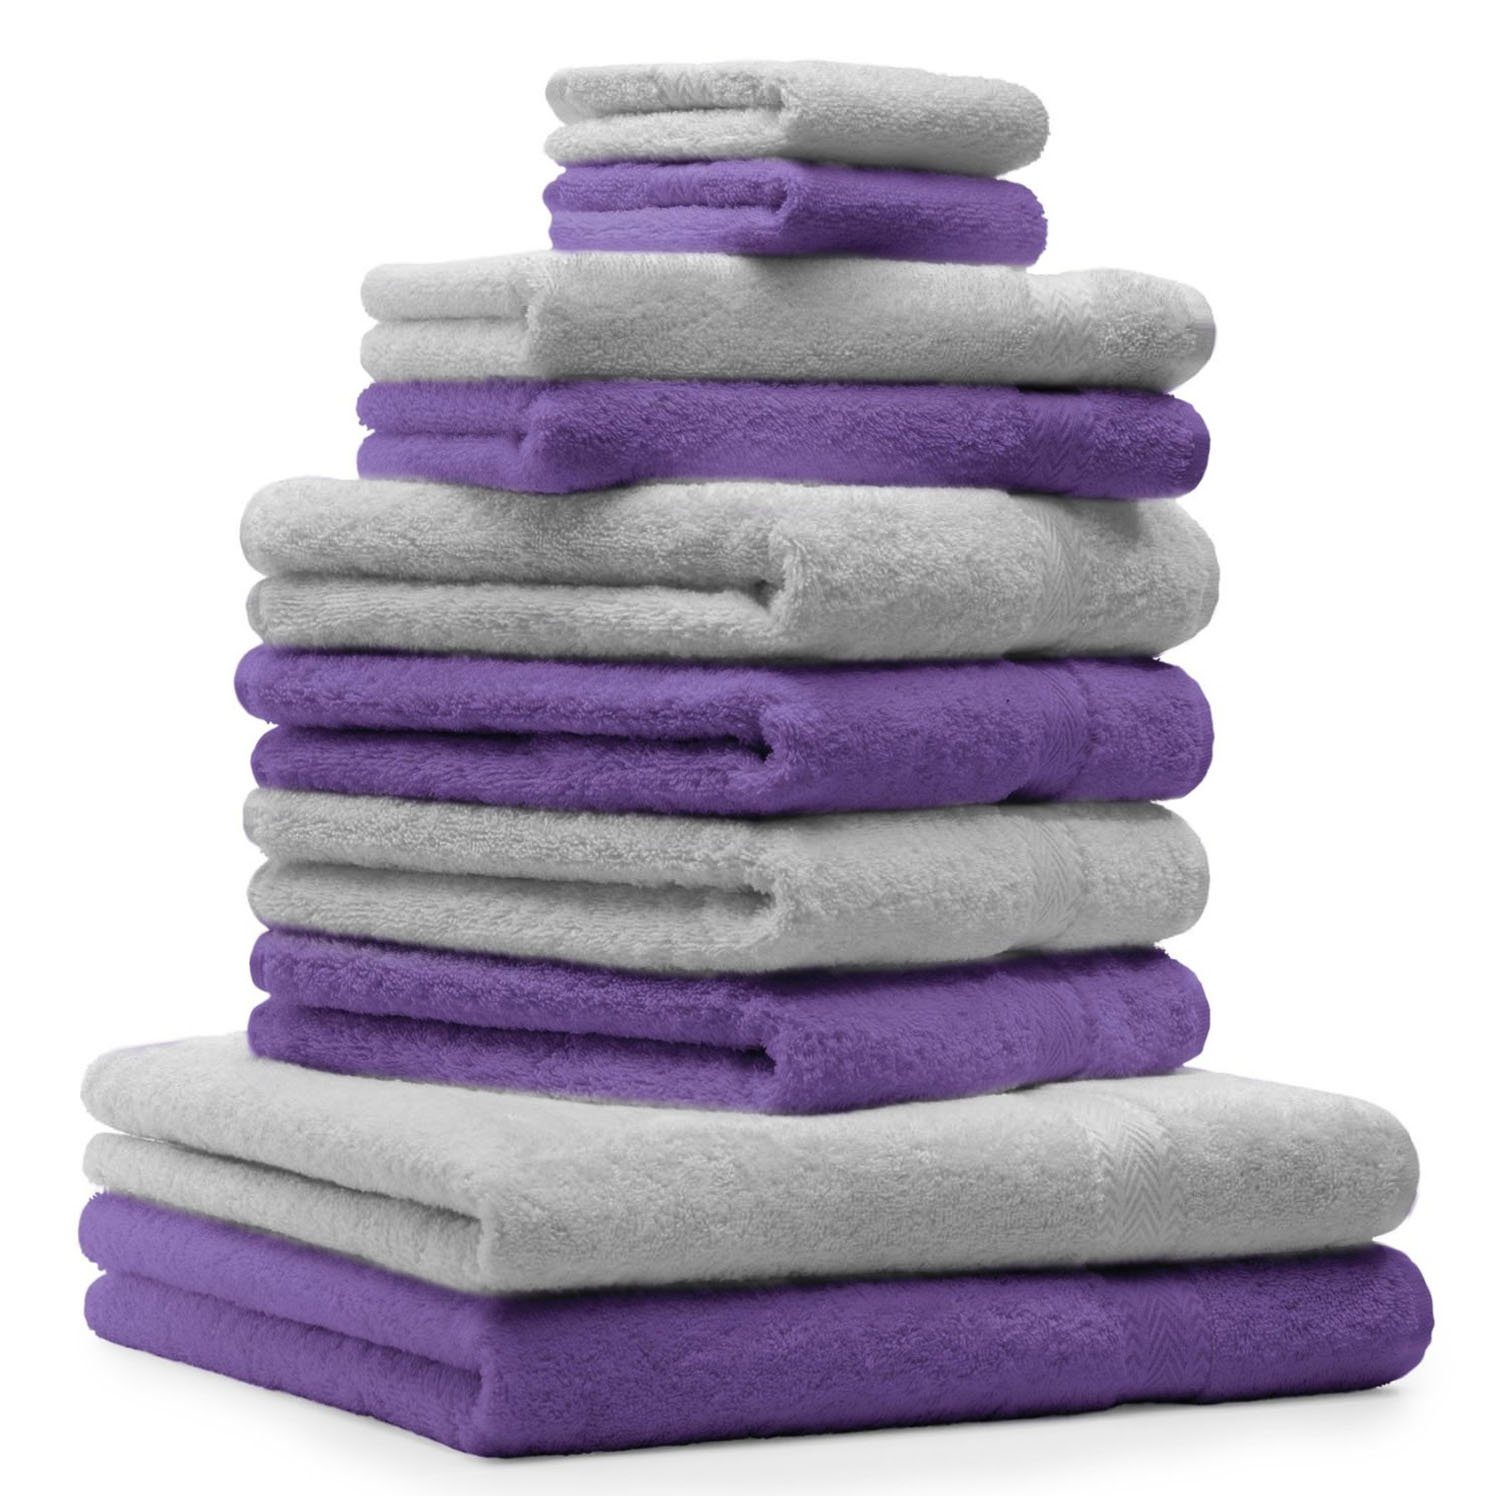 Betz Handtuch Set 10-TLG. Handtuch-Set Classic Farbe lila und silbergrau, 100% Baumwolle | Handtuch-Sets